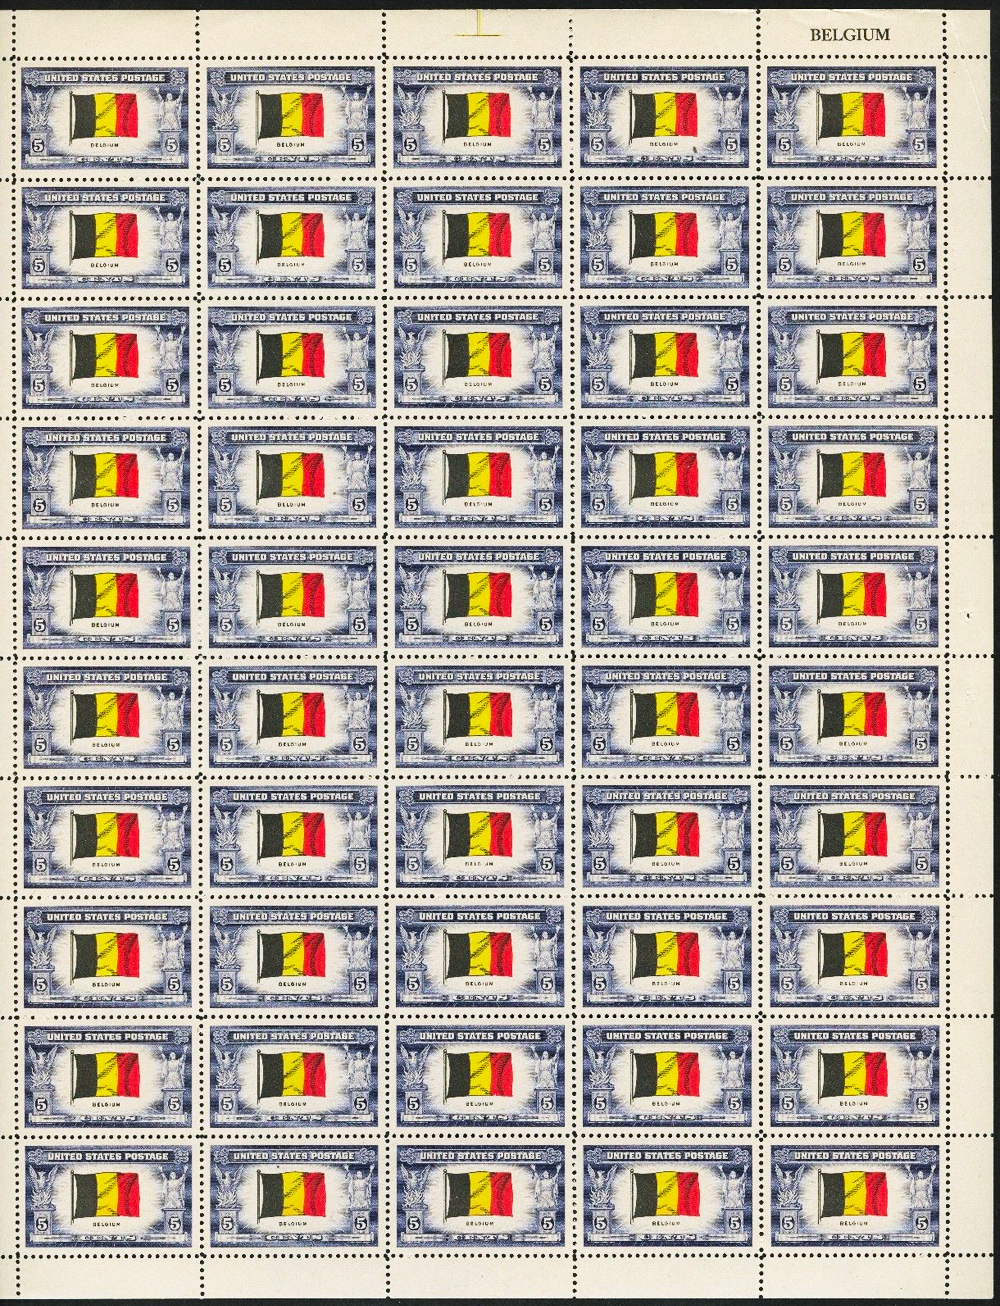 US stamp 914 sheet